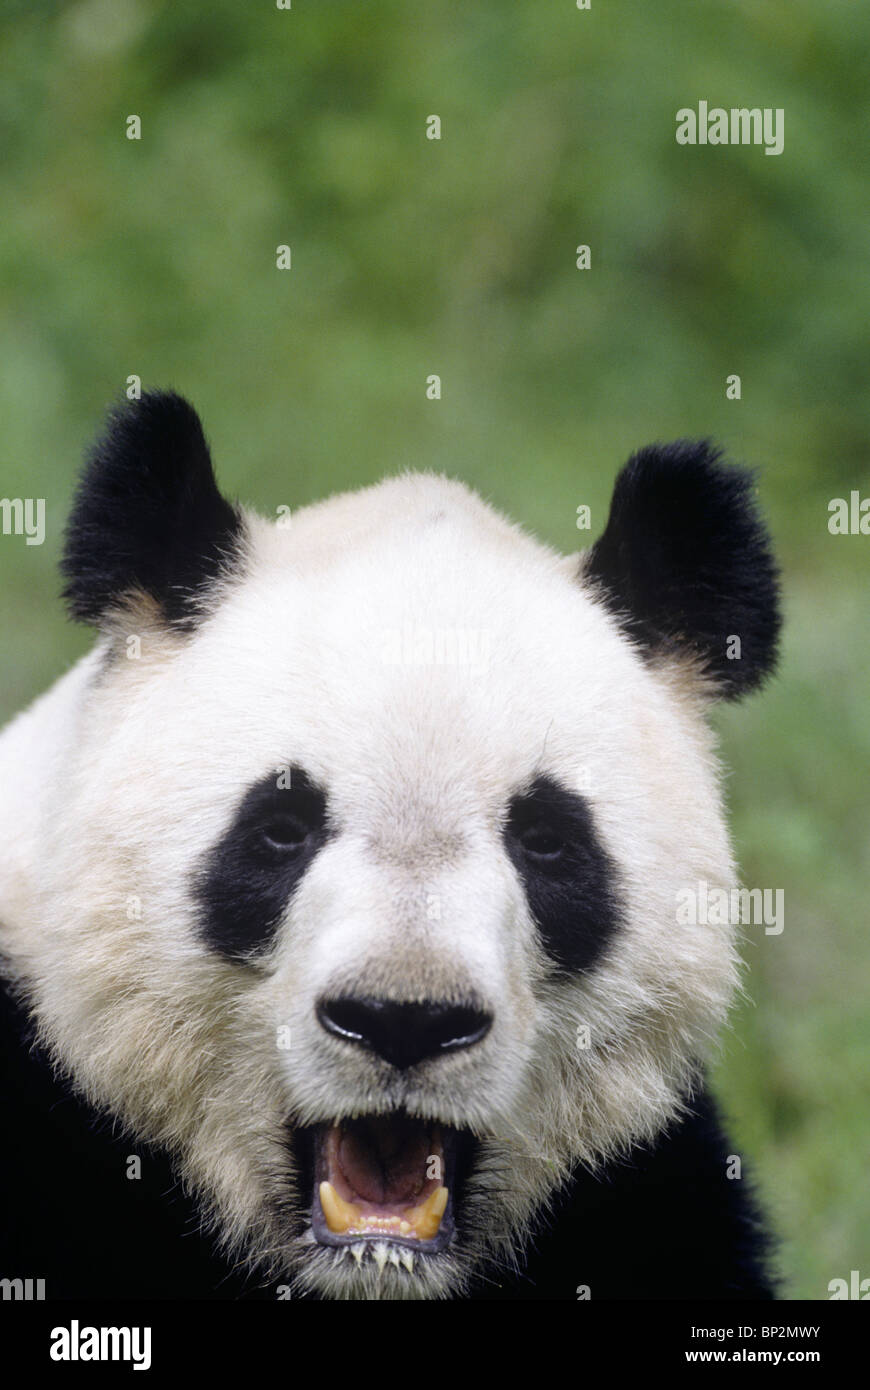 Giant panda showing clown-like face, Wolong,  China Stock Photo